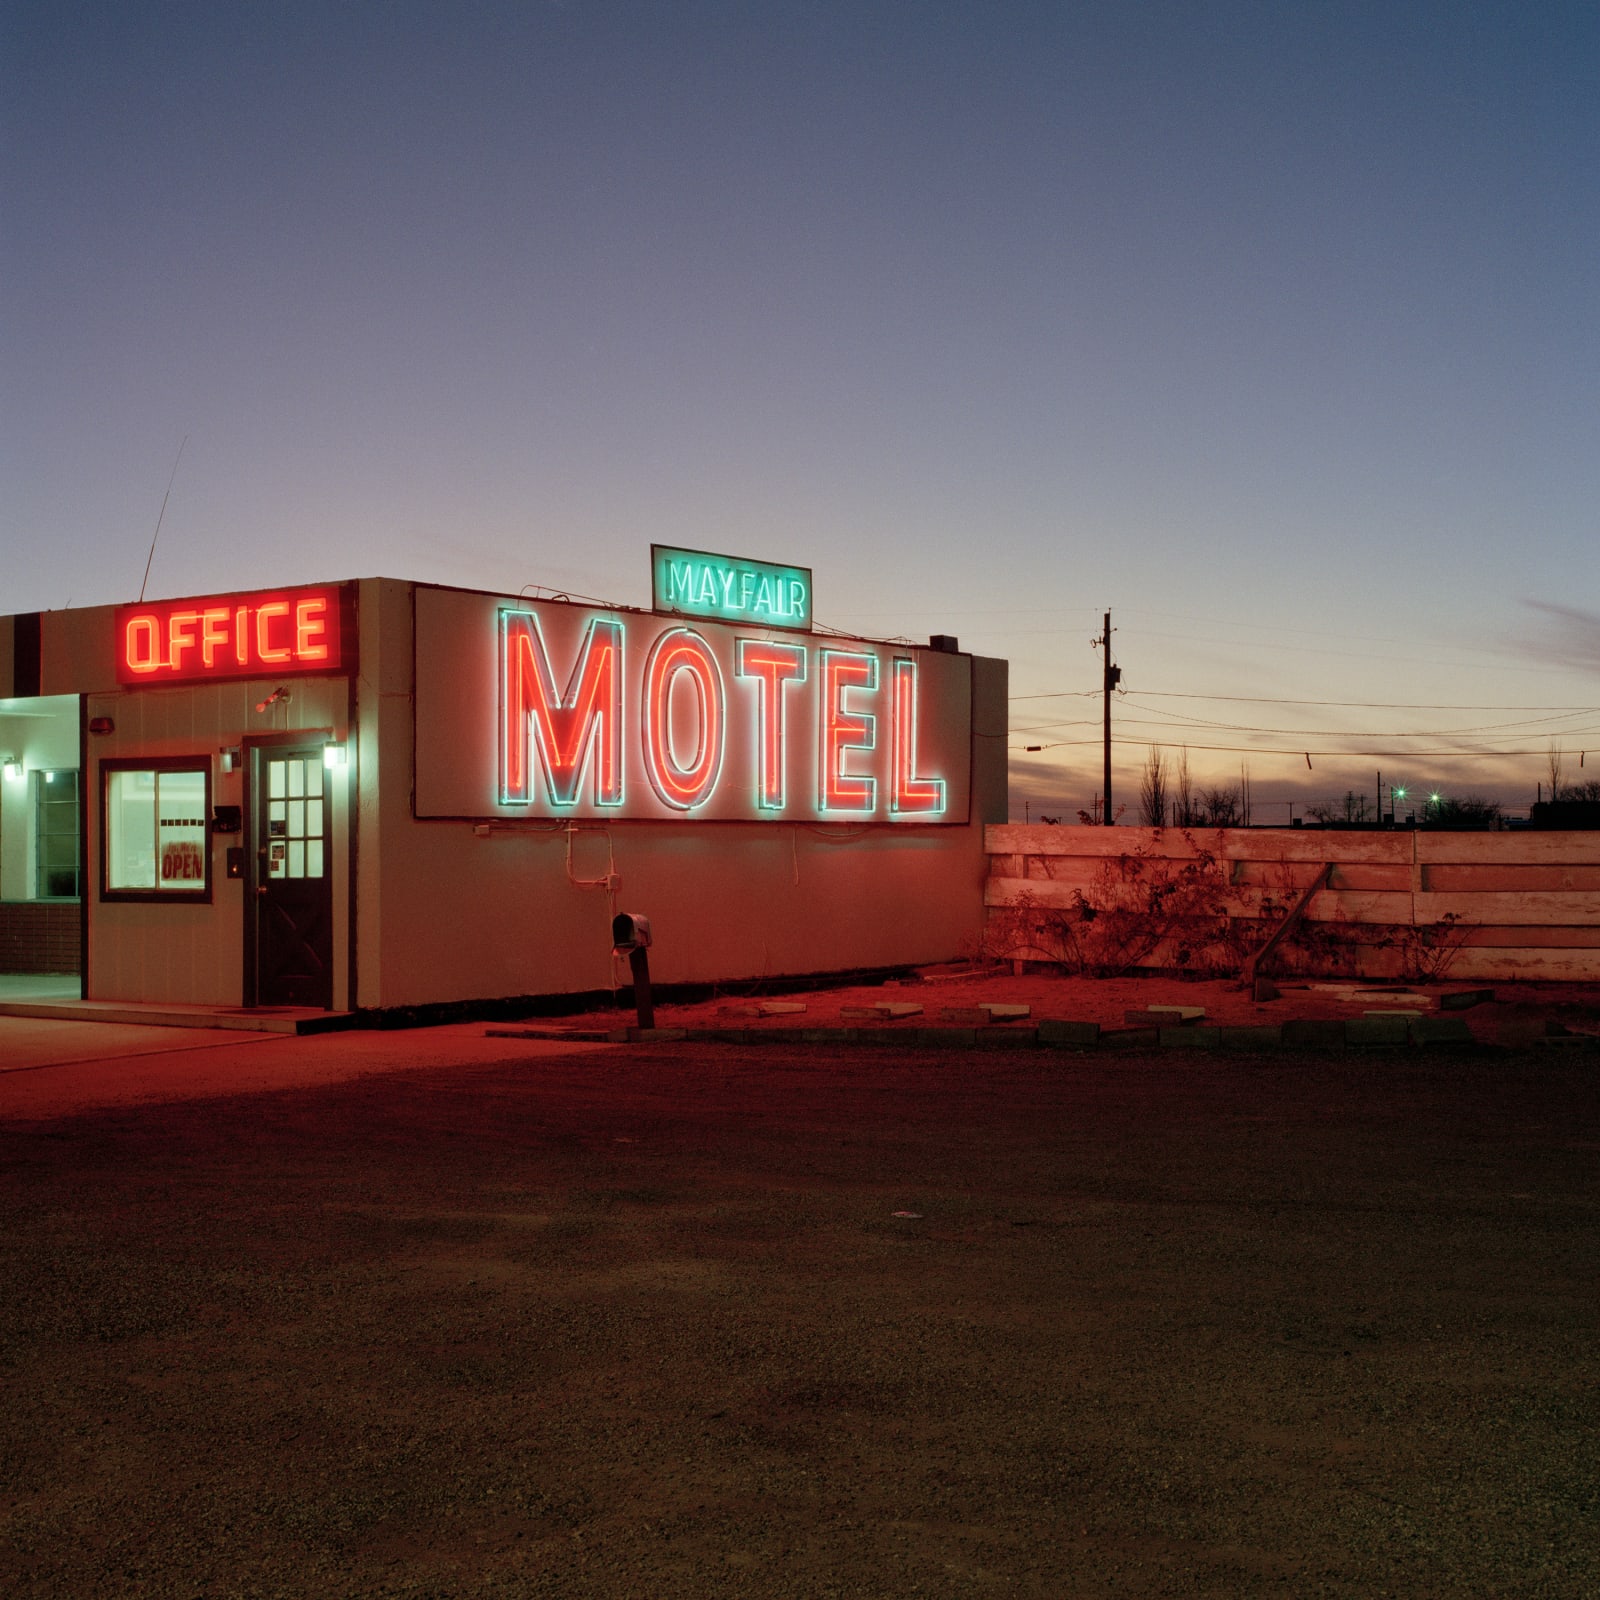 Jeff Brouws, Motel, Winslow, Arizona, 1990